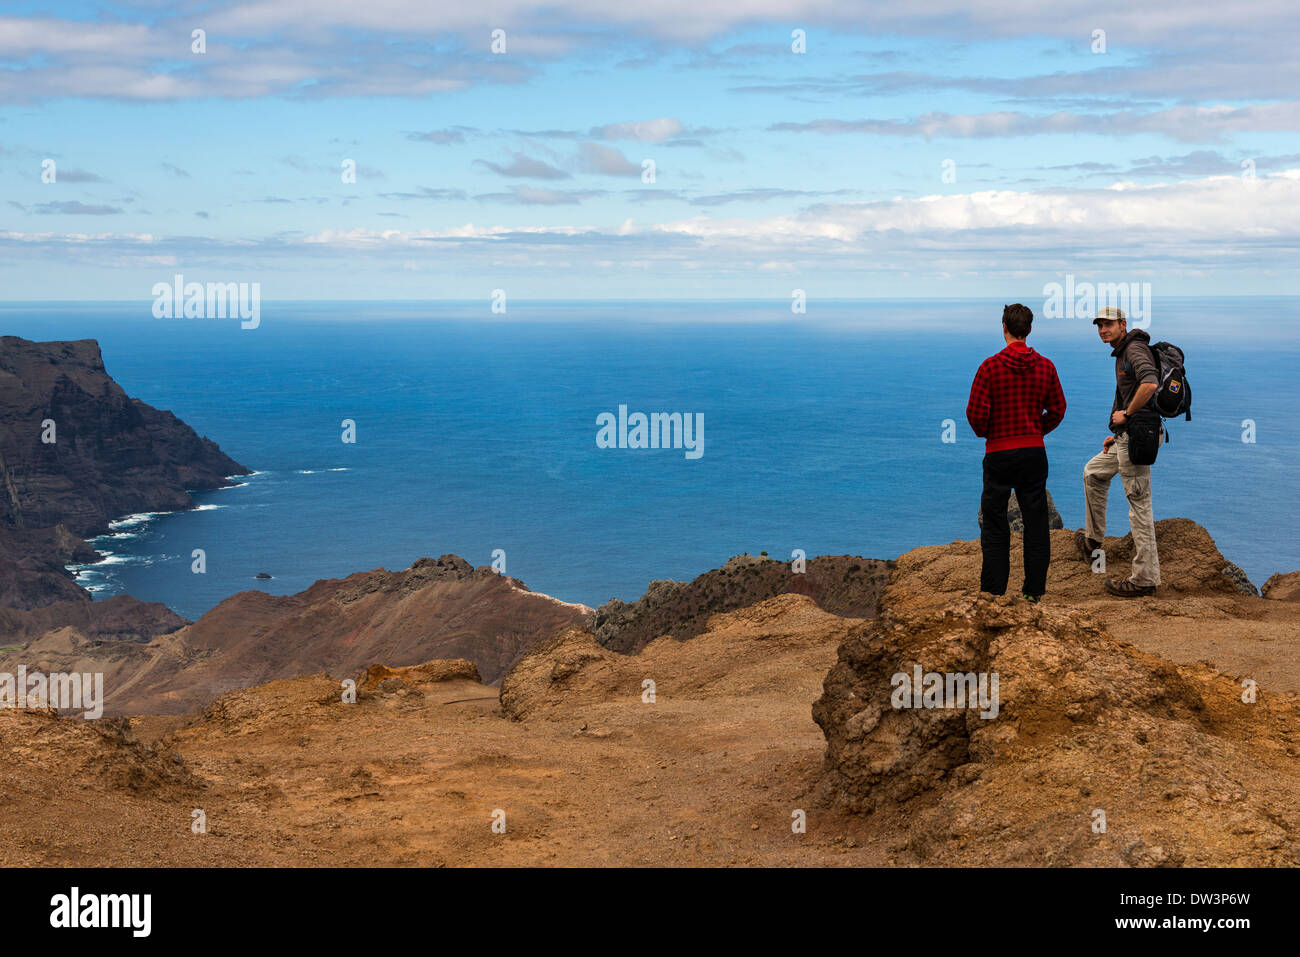 Excursionistas admirar las vistas sobre la isla de Santa Helena en el Atlántico sur Foto de stock